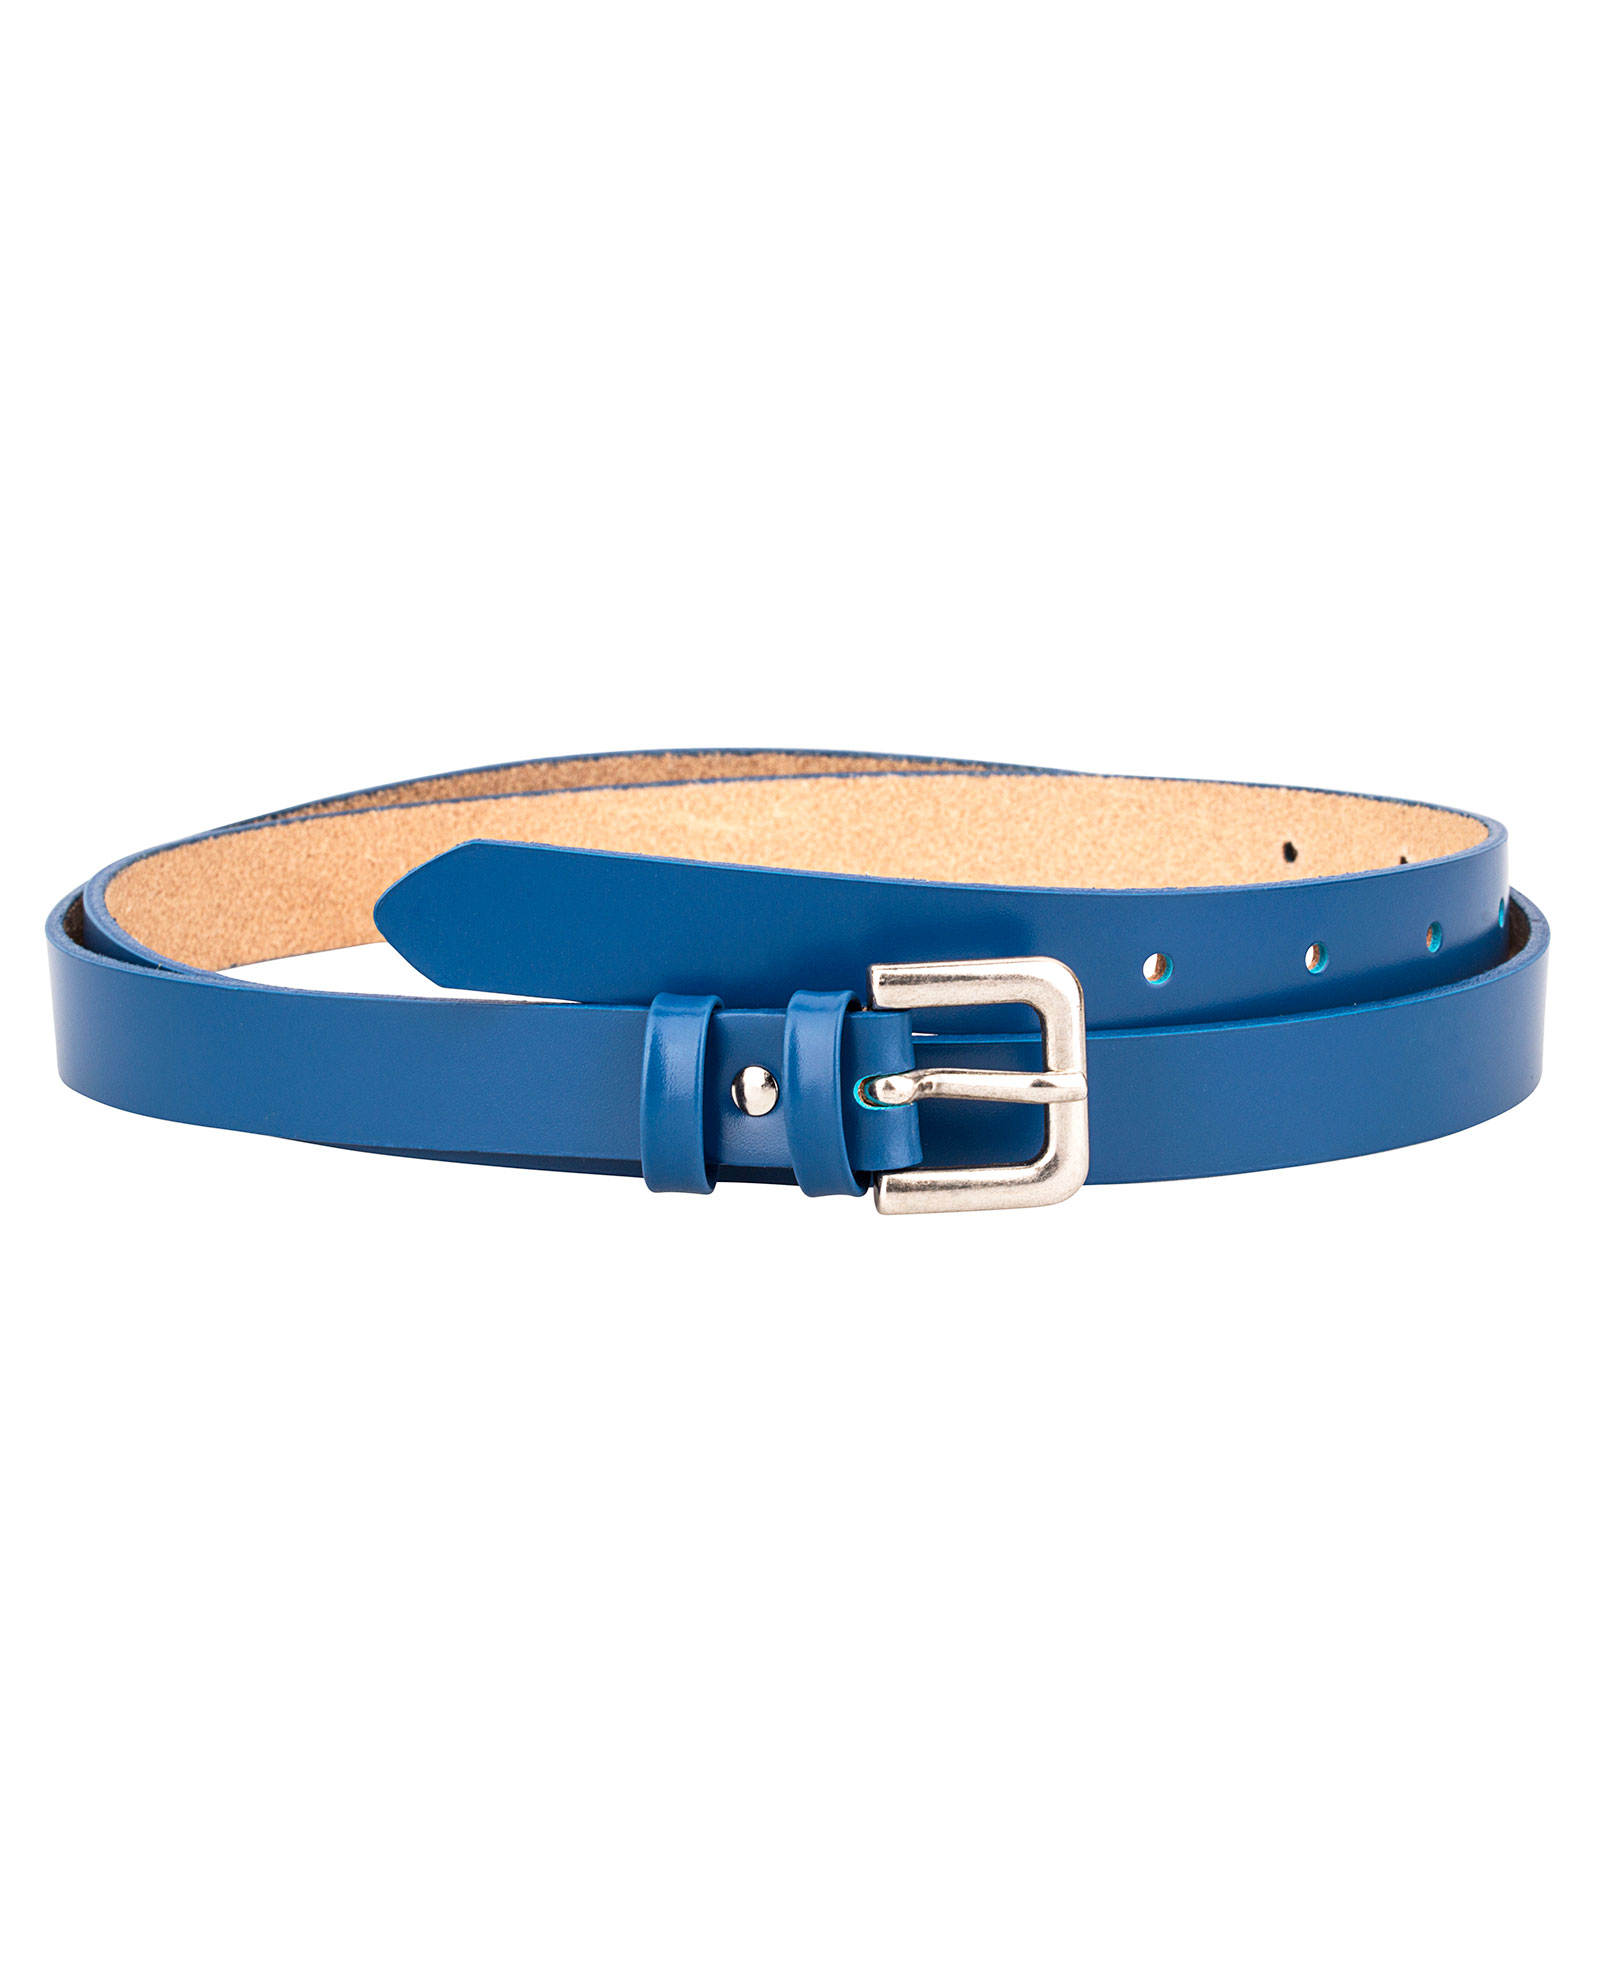 Buy Women's Blue Skinny Belt - Nappa Leather - LeatherBeltsOnline.com